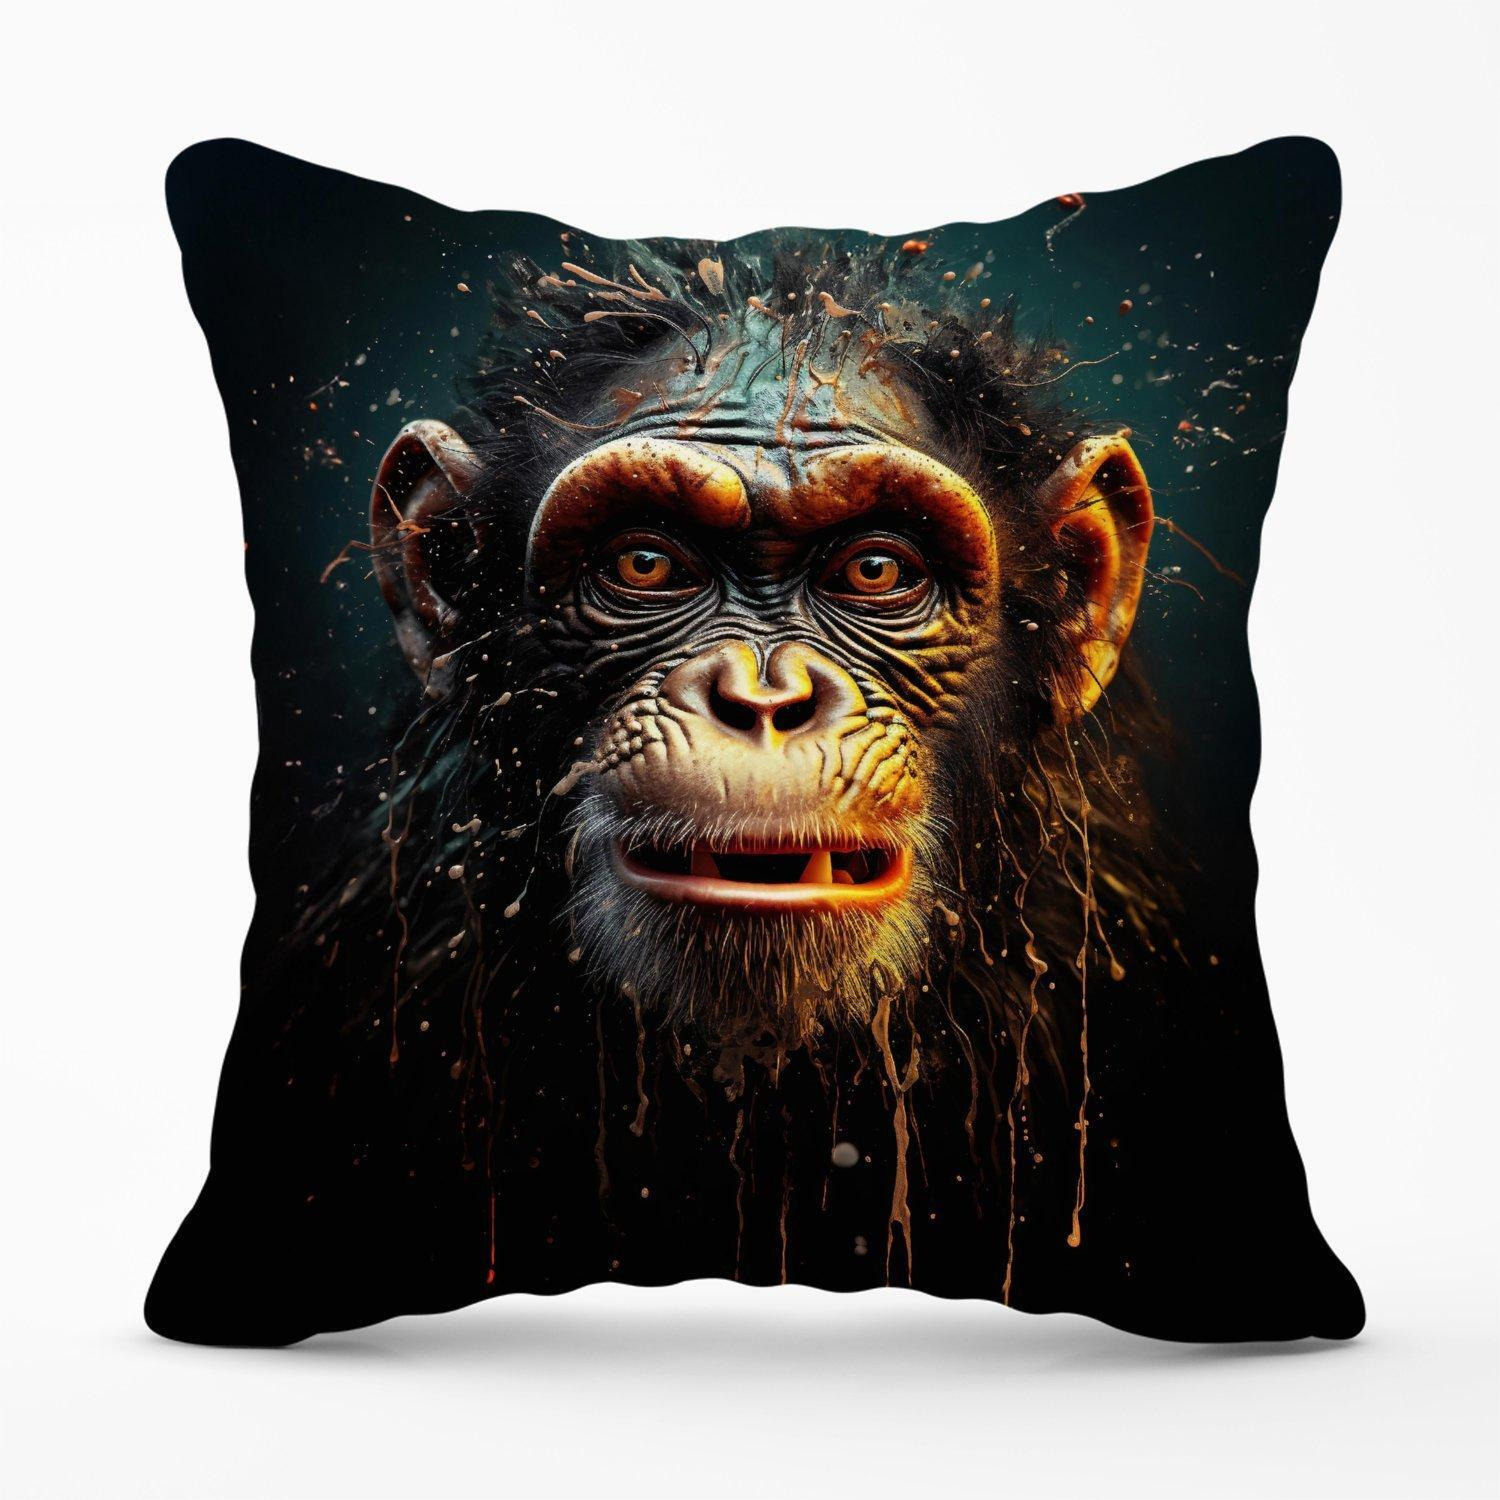 Splashart Monkey Face Outdoor Cushion - image 1